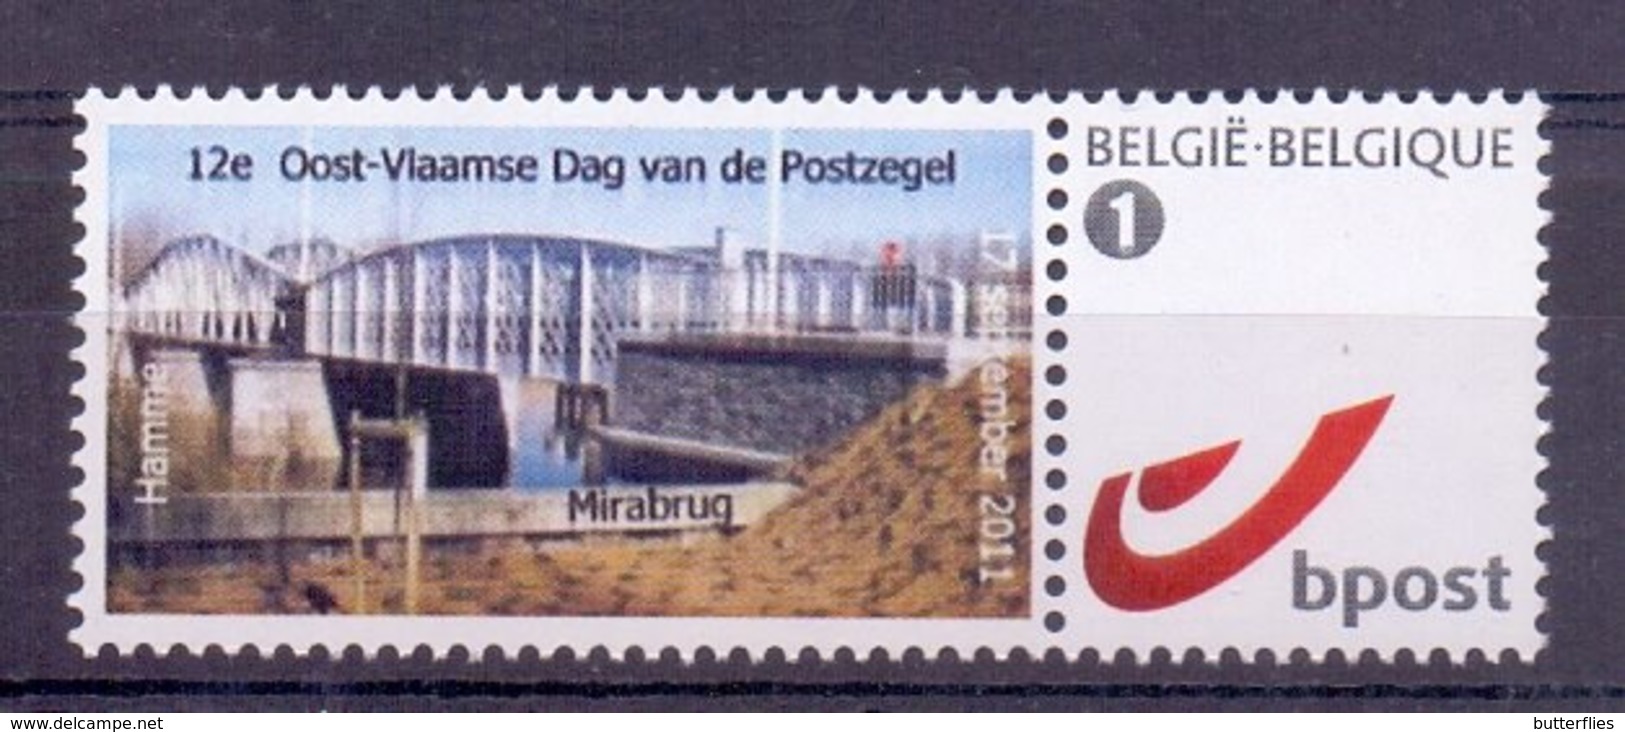 Belgie - 2011 - Duo Stamp - Hamme 2011 - 12e Oost-Vlaamse Dag Van De Postzegel - Mirabrug - Mint